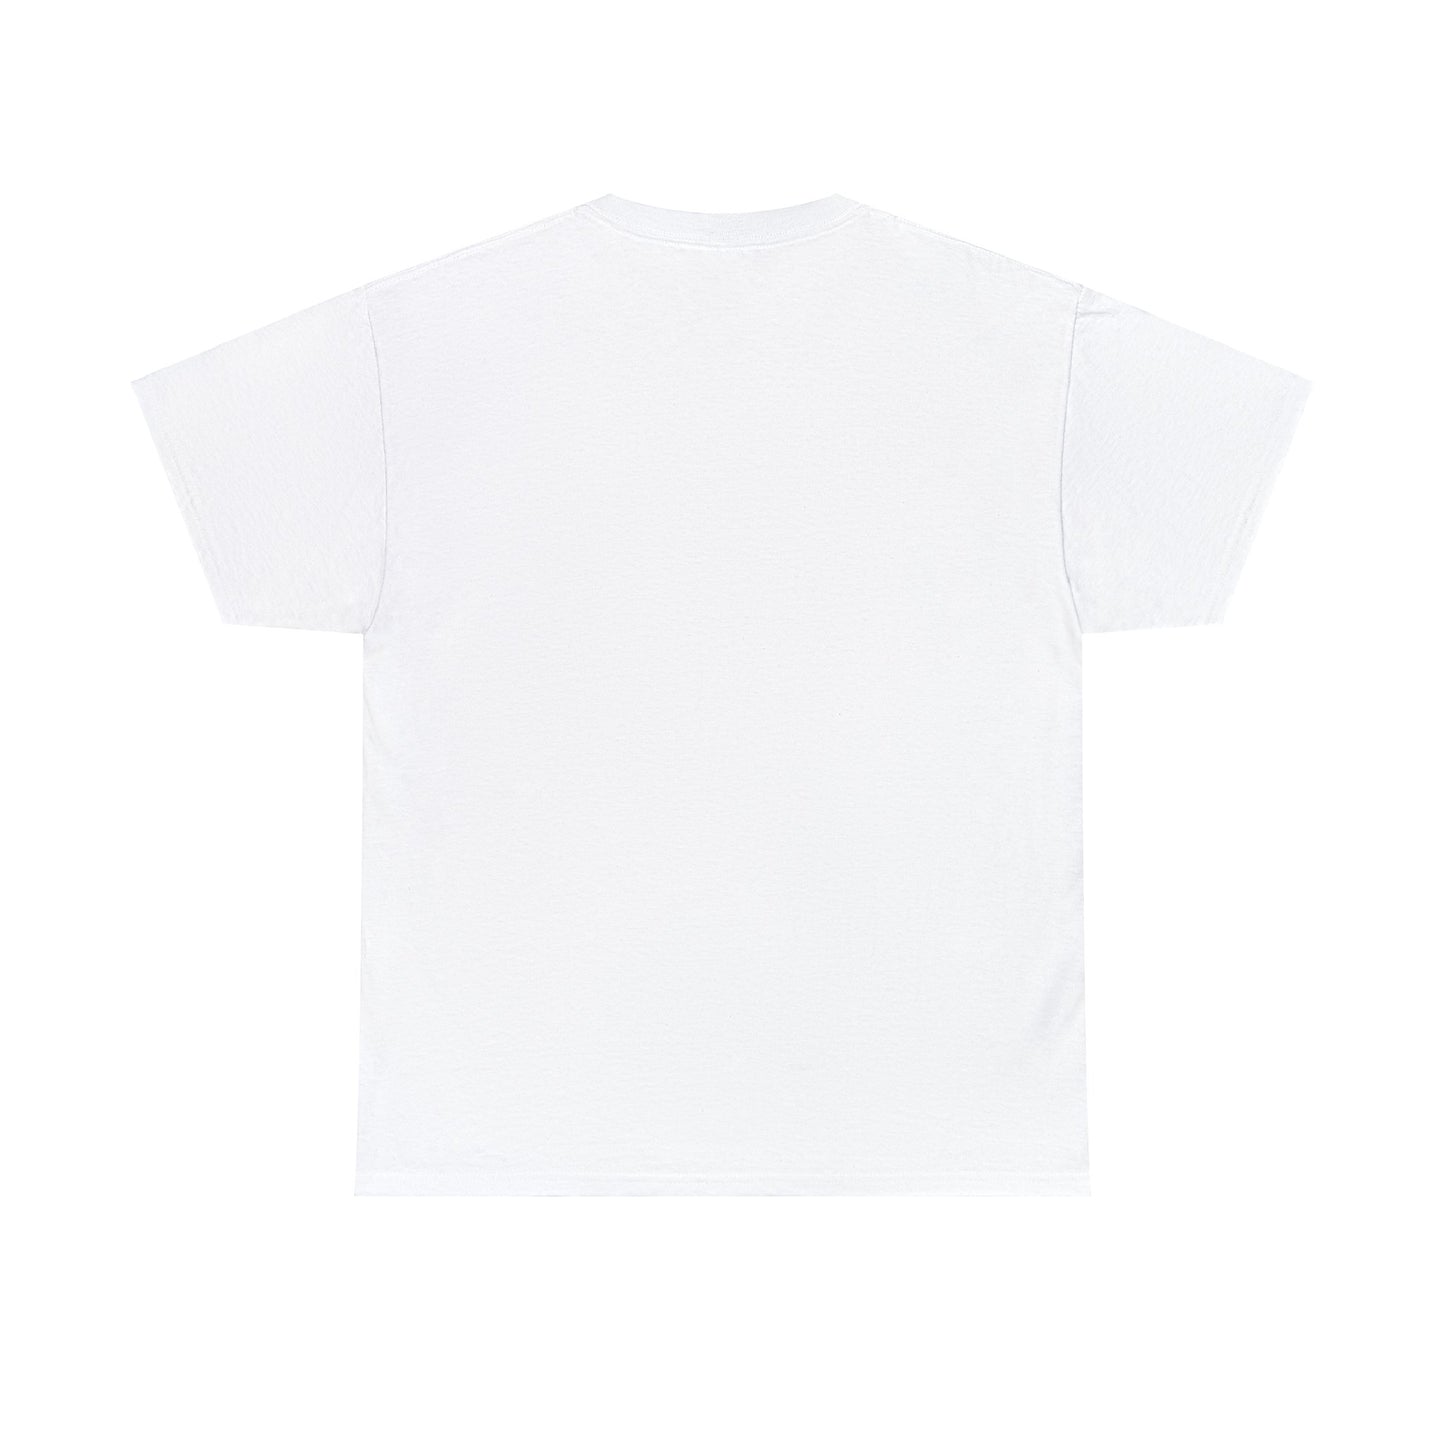 Unisex easter be hoppy  t-shirt